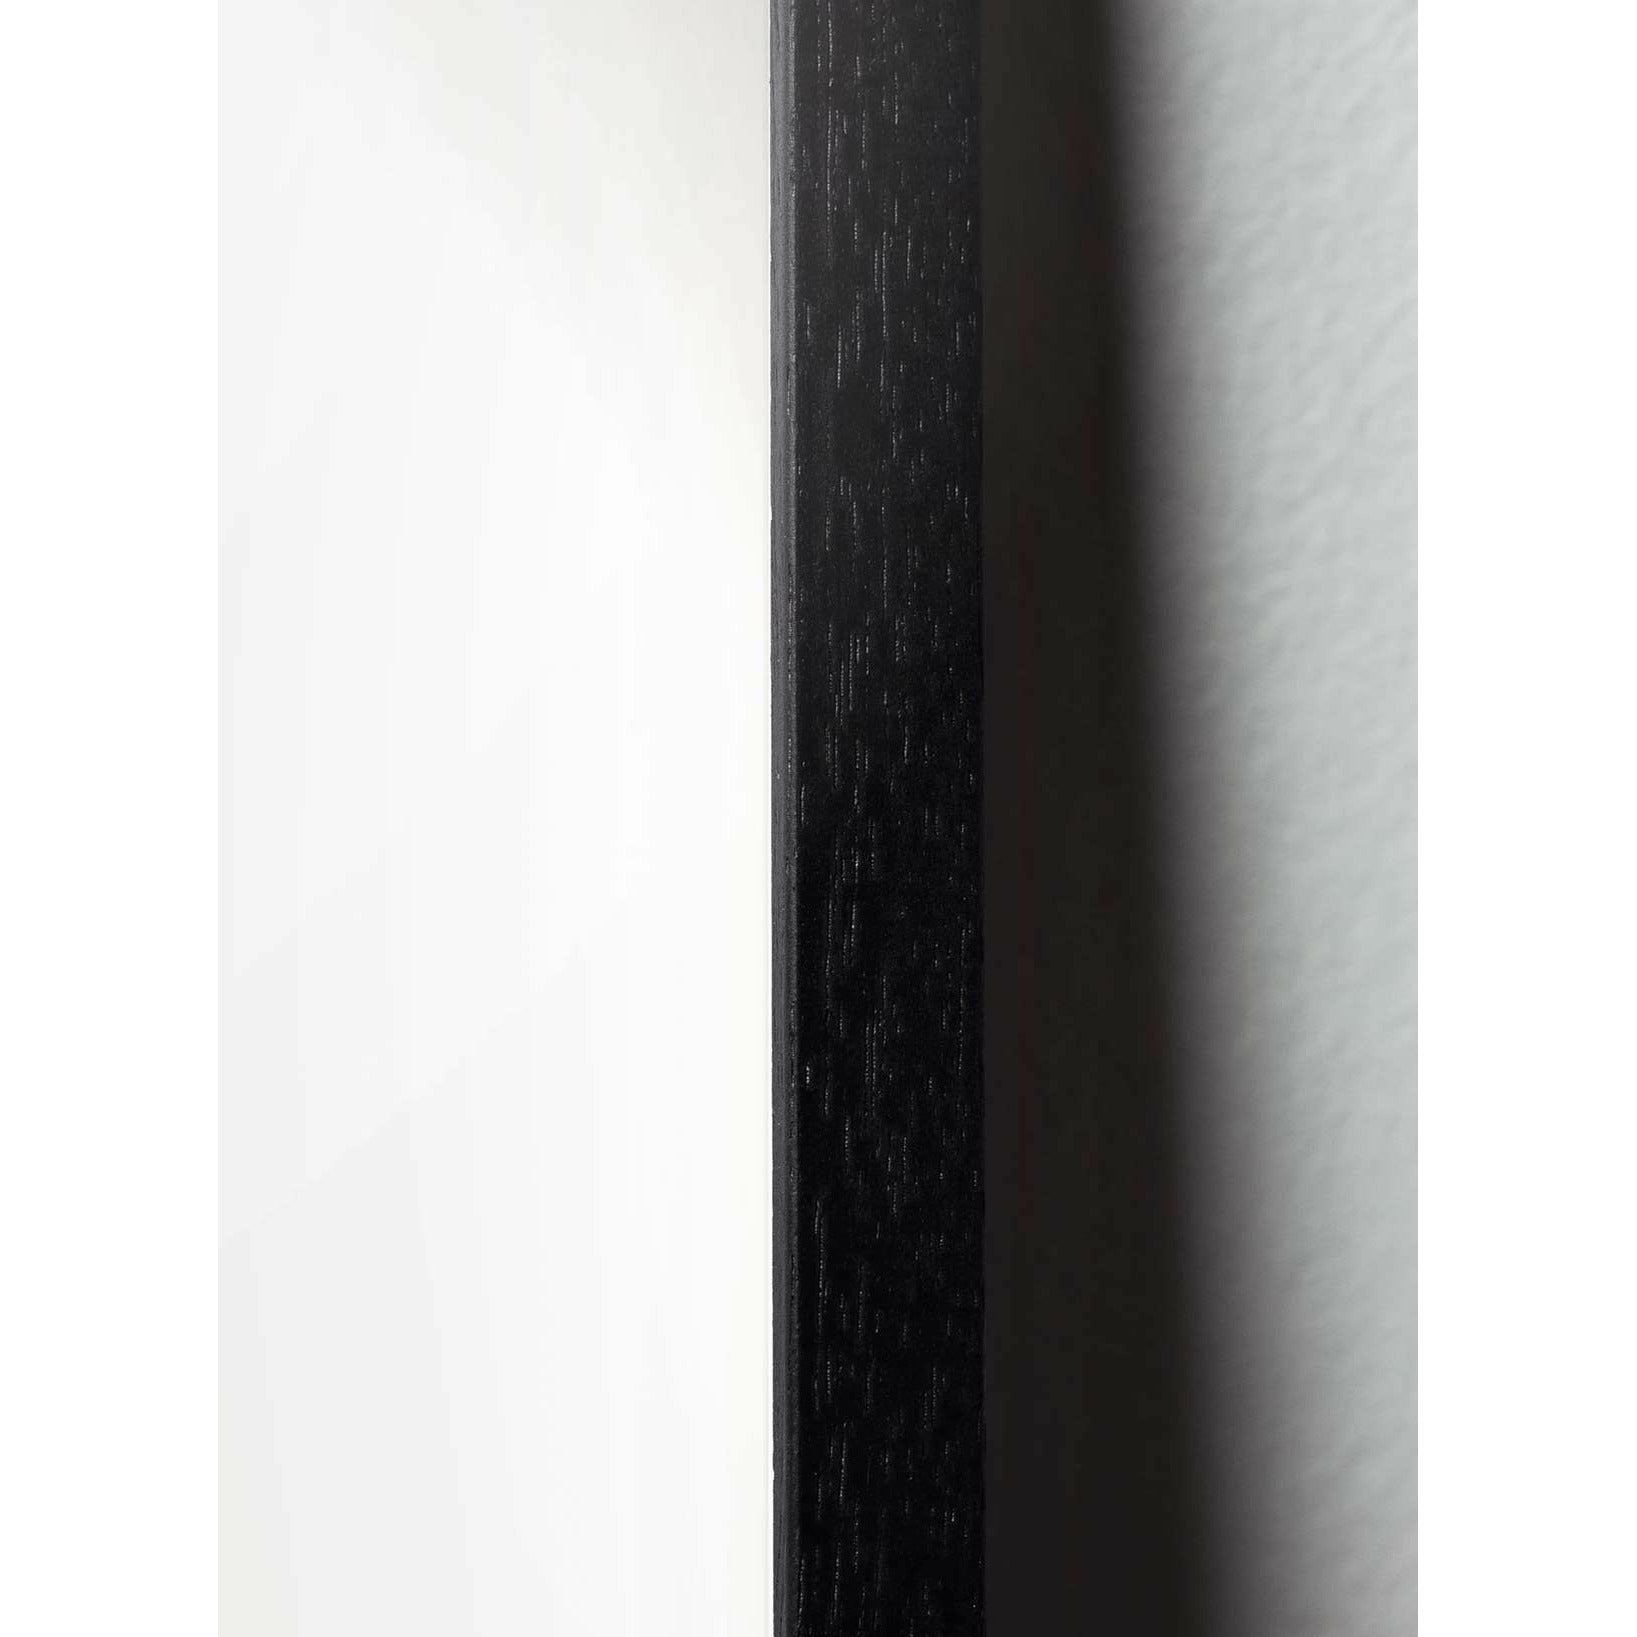 Brainchild Drop Classic Poster, Rahmen aus schwarz lackiertem Holz 30x40 Cm, schwarzer Hintergrund